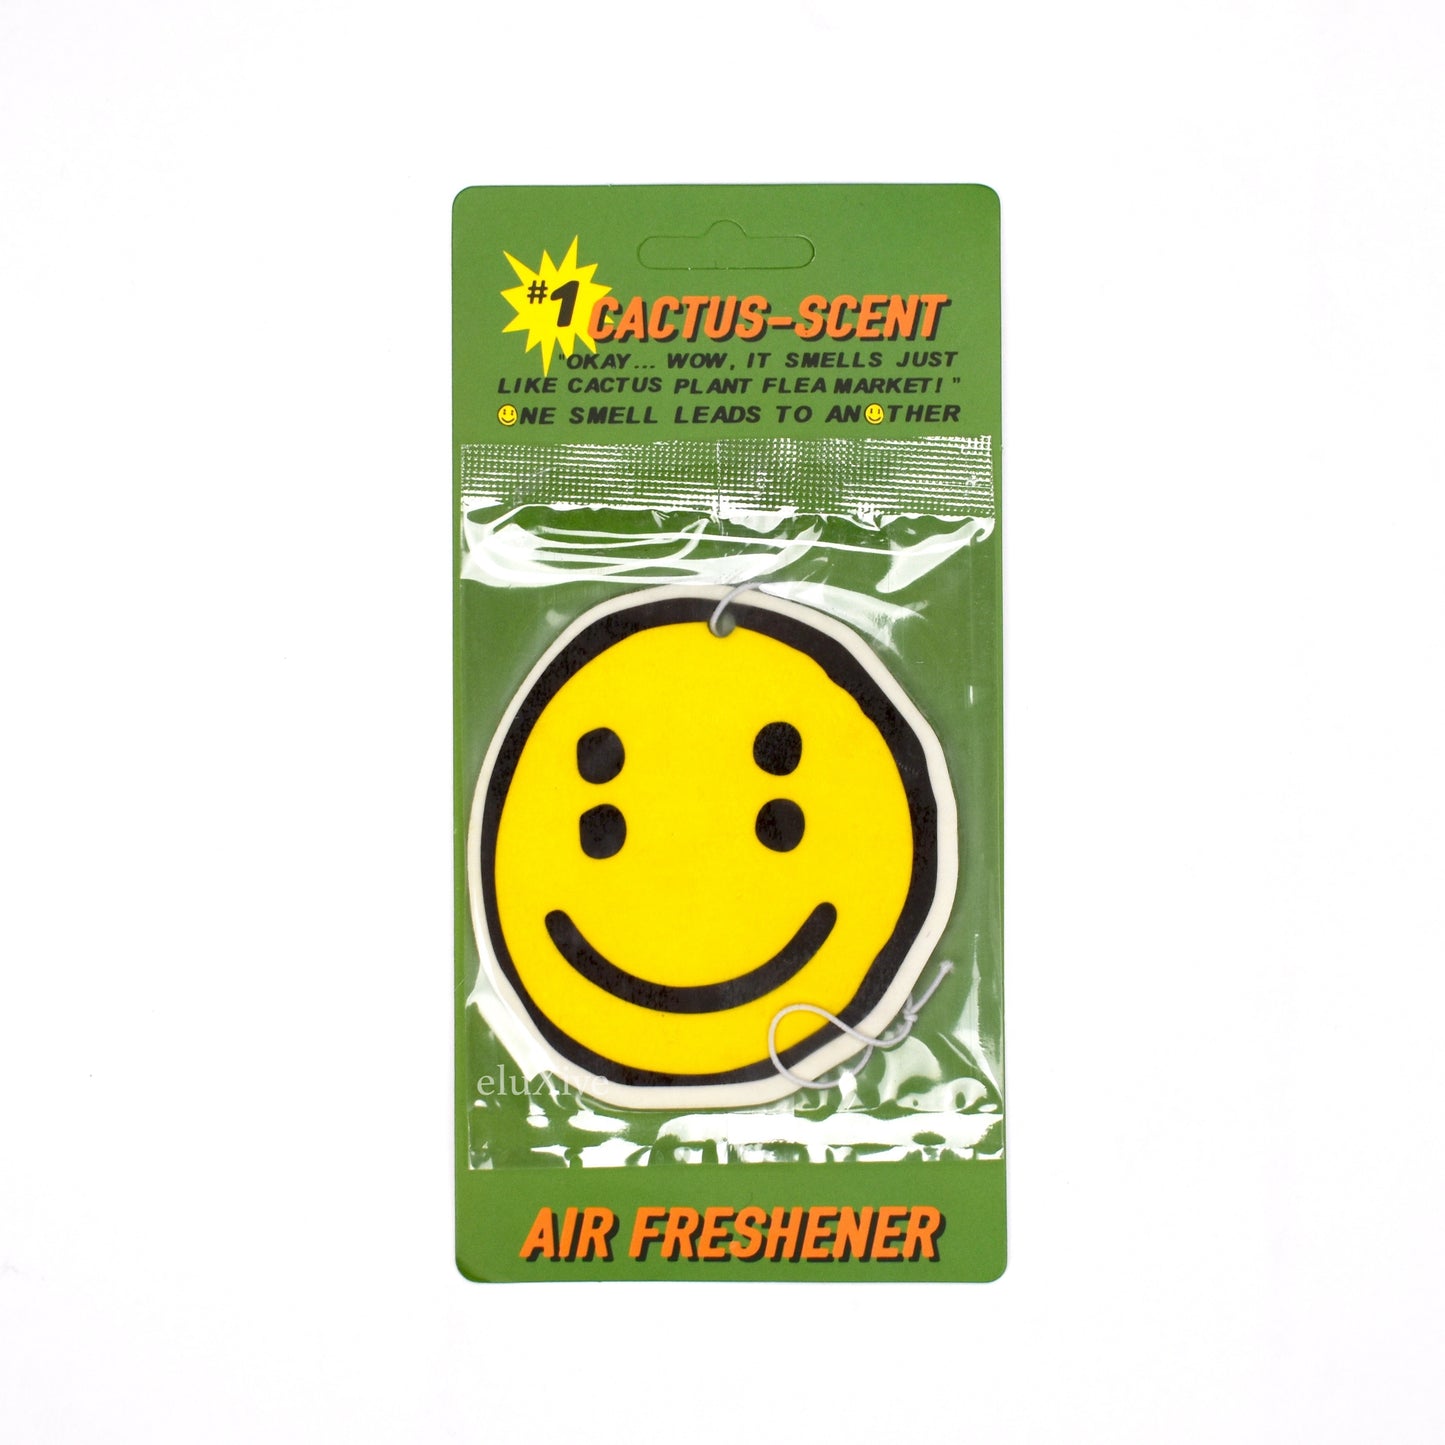 Cactus Plant Flea Market - Cactus-Scent Air Freshener